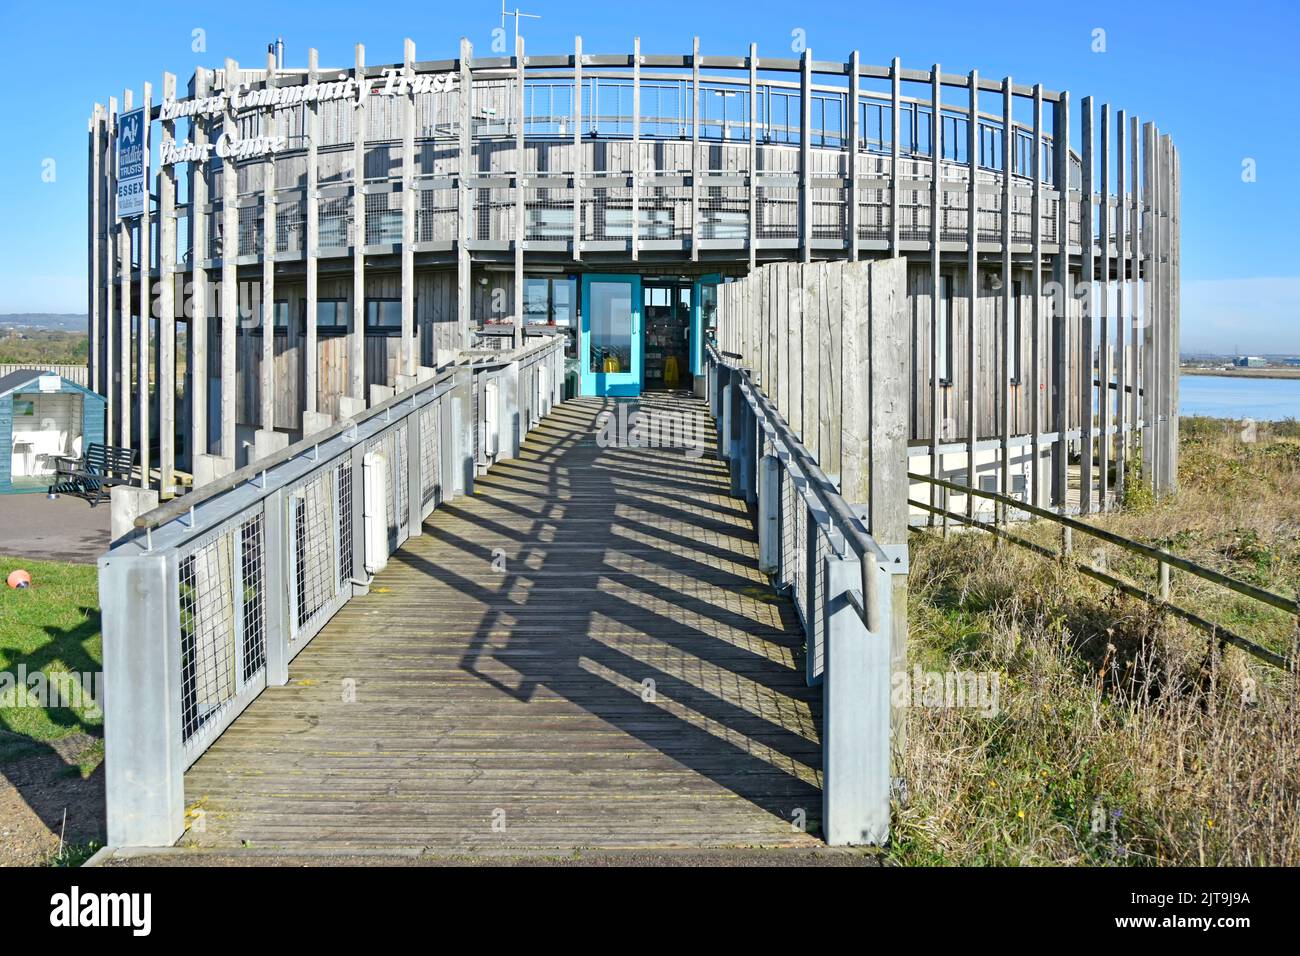 Rampe et portes d'entrée adaptées aux fauteuils roulants Essex Wildlife Trust Thameside nature Reserve & Discovery Park centre d'accueil bâtiment mucking Angleterre Royaume-Uni Banque D'Images